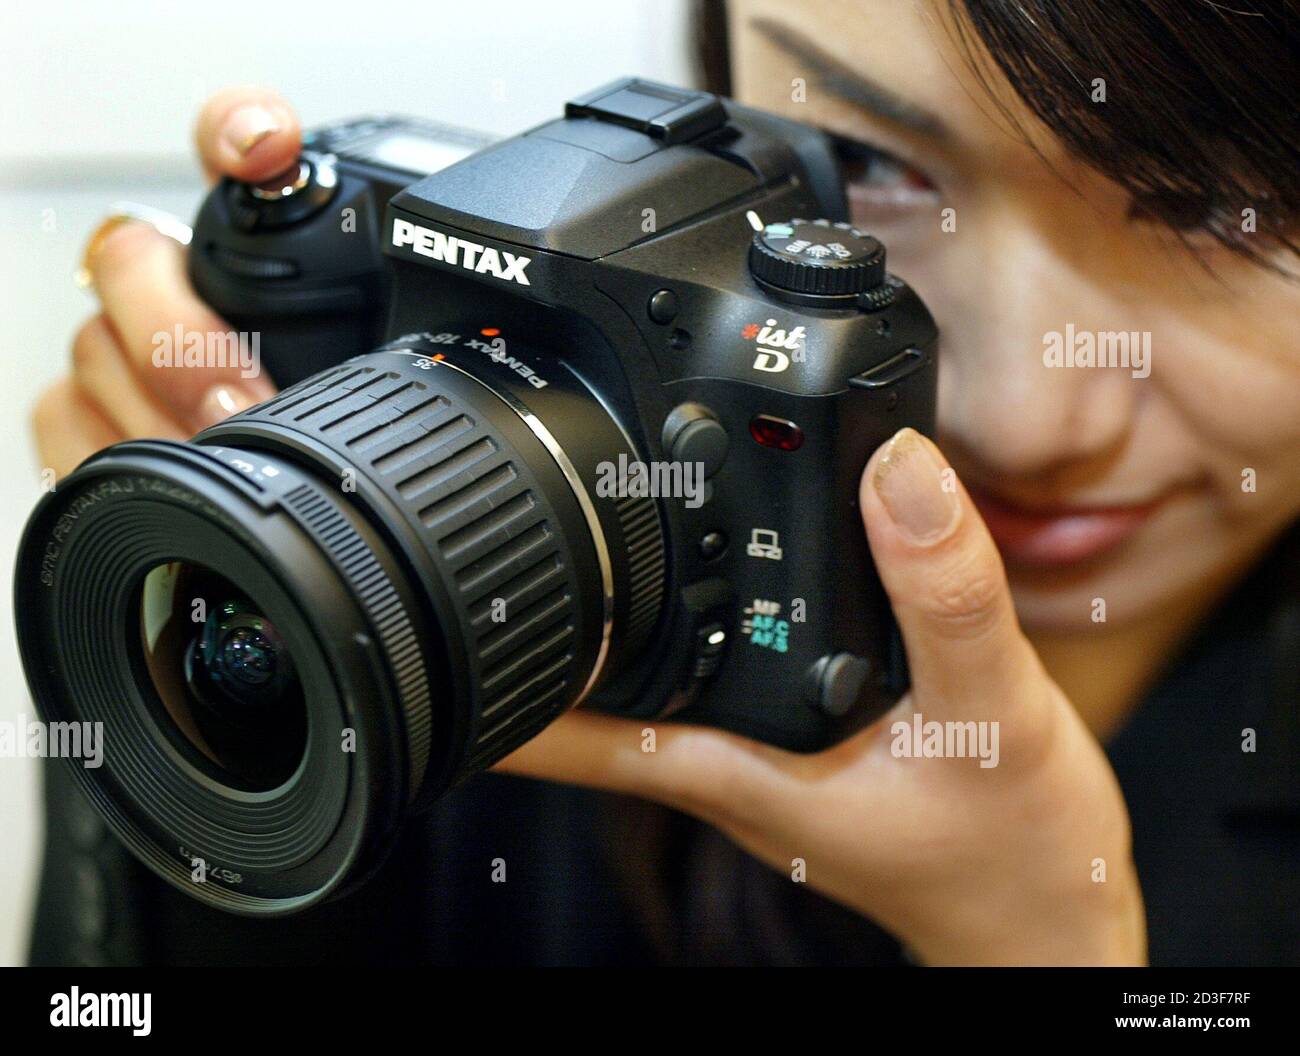 La nuova fotocamera reflex digitale a obiettivo singolo Pentax "ist D"  viene presentata a Tokyo l'8 agosto 2003. La fotocamera misura 129 mm (5.0  pollici) di larghezza, 94.5 mm (3.7 pollici) di